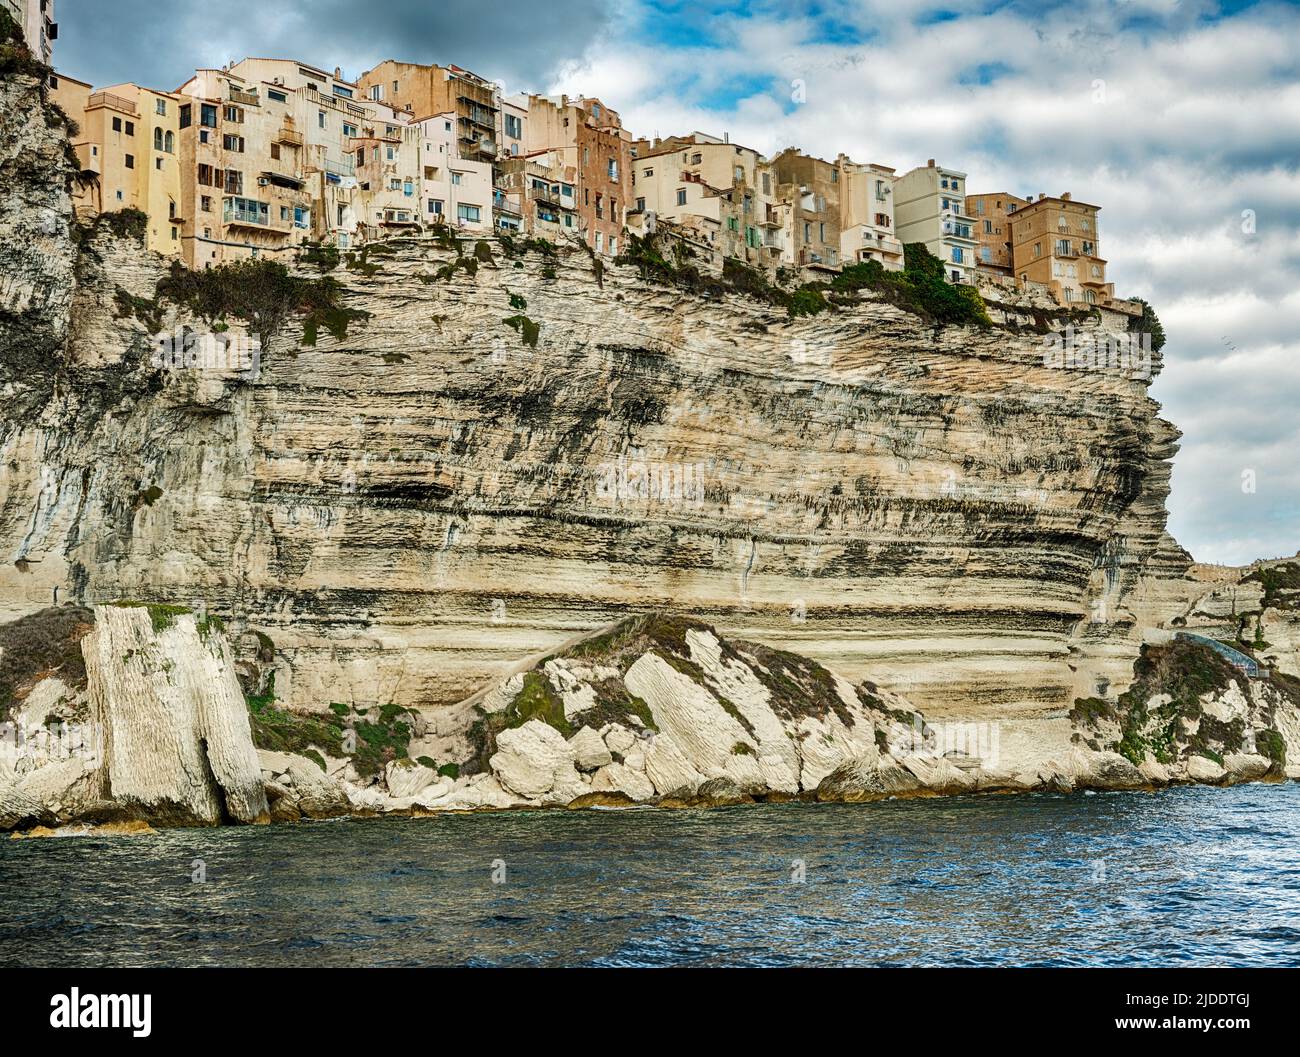 La ville de Bonifacio en Corse est perchée au bord de falaises de pierre qui surplombent la mer Tyrrhénienne. Banque D'Images